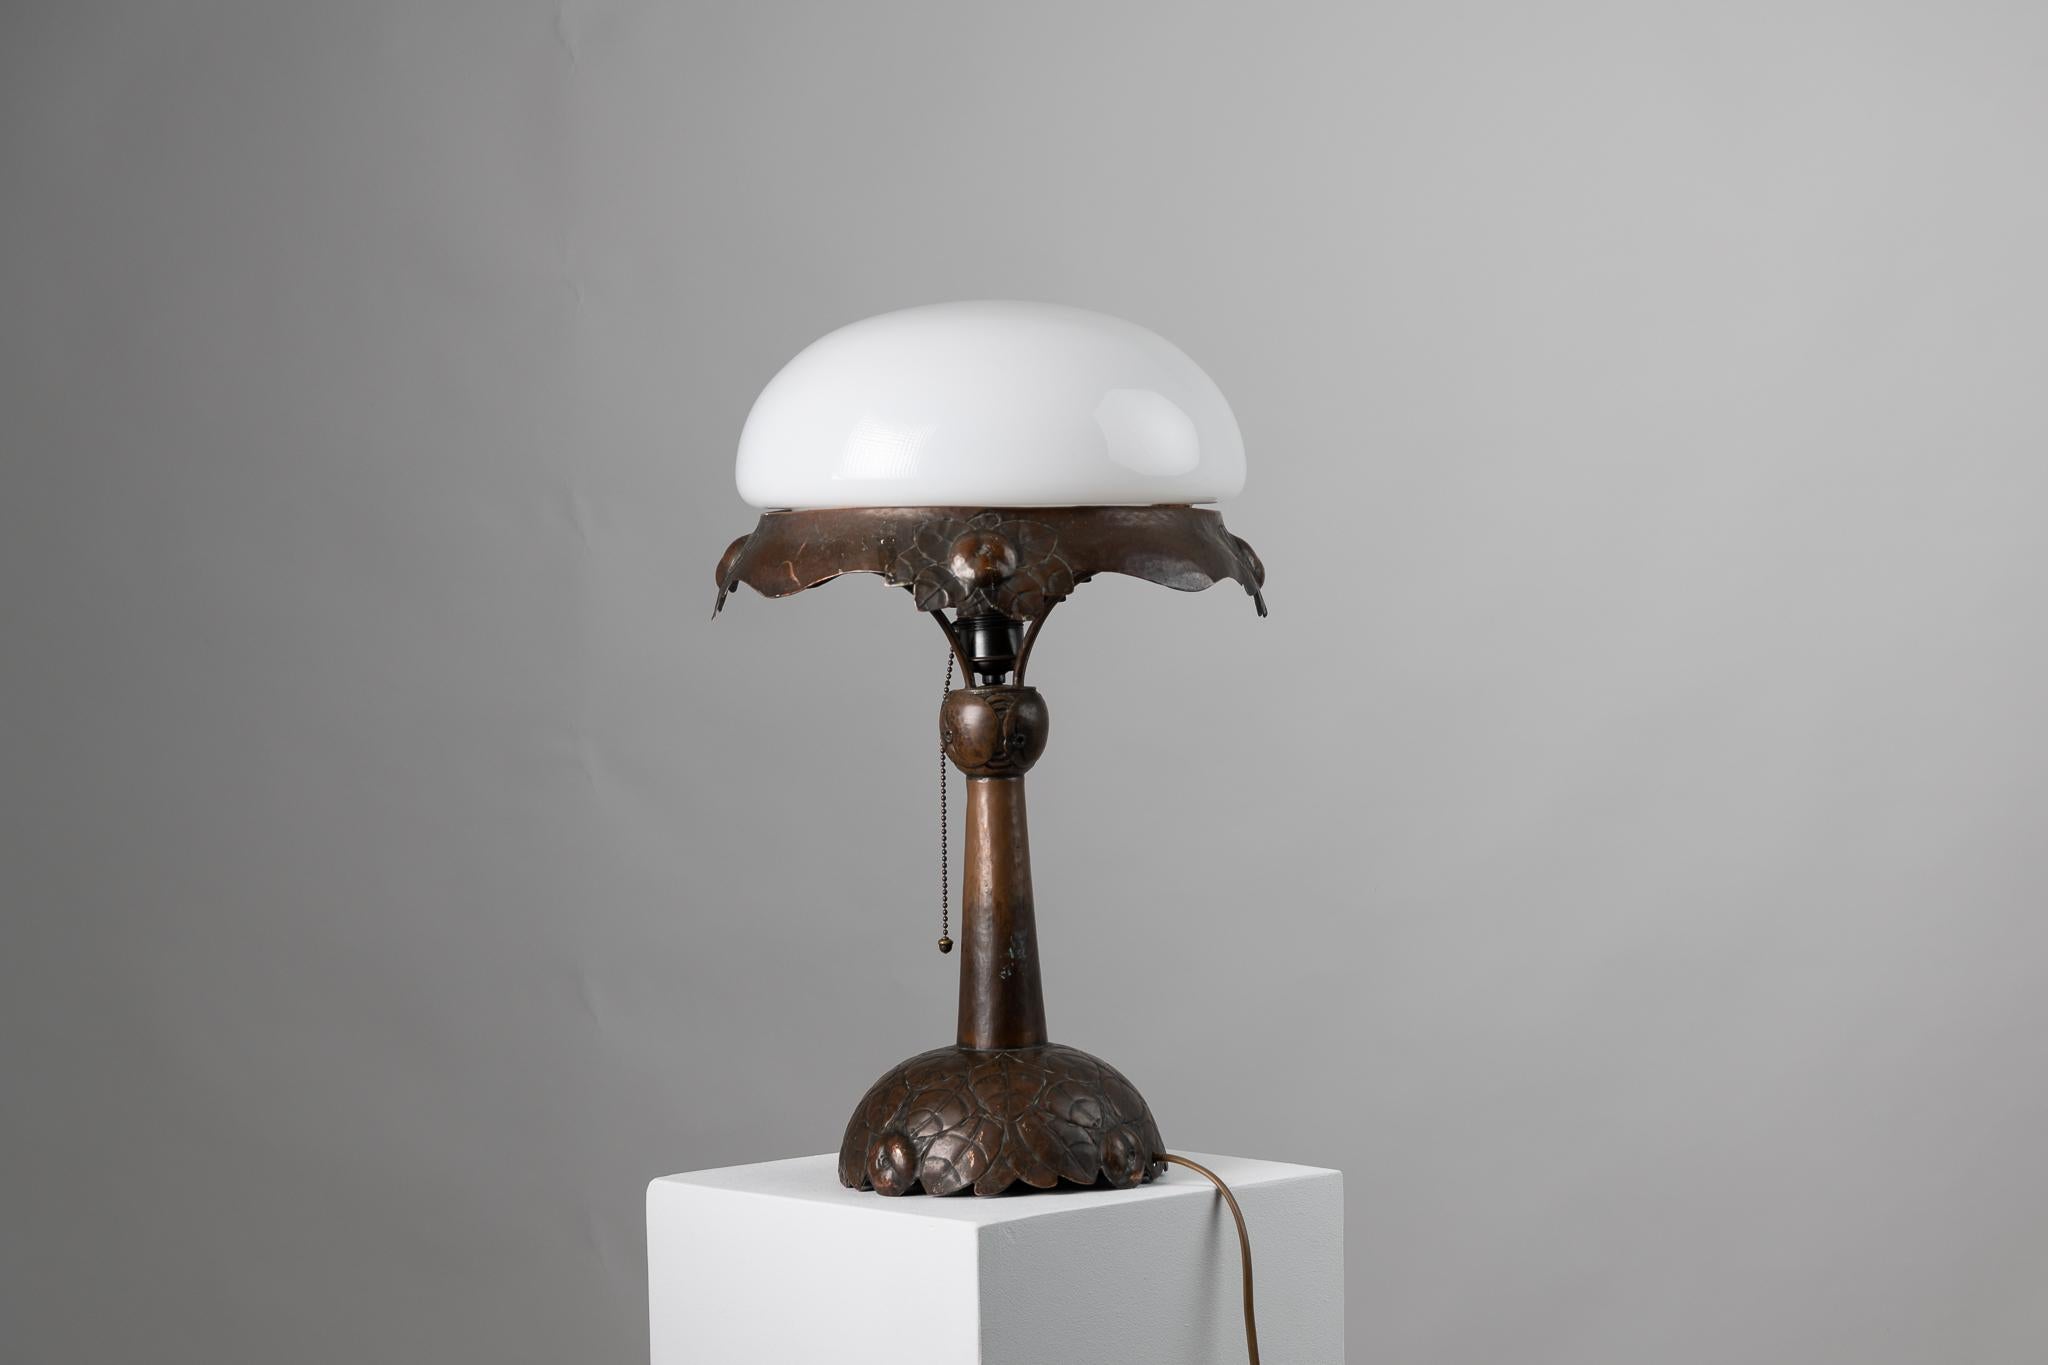 Lampe de table Art nouveau de Suède. La lampe date du début du XXe siècle, de 1910 à 1915, et est fabriquée à la main avec un pied en cuivre massif. L'ensemble de la lampe est décoré de façon typique de l'art nouveau et reflète l'inspiration de la